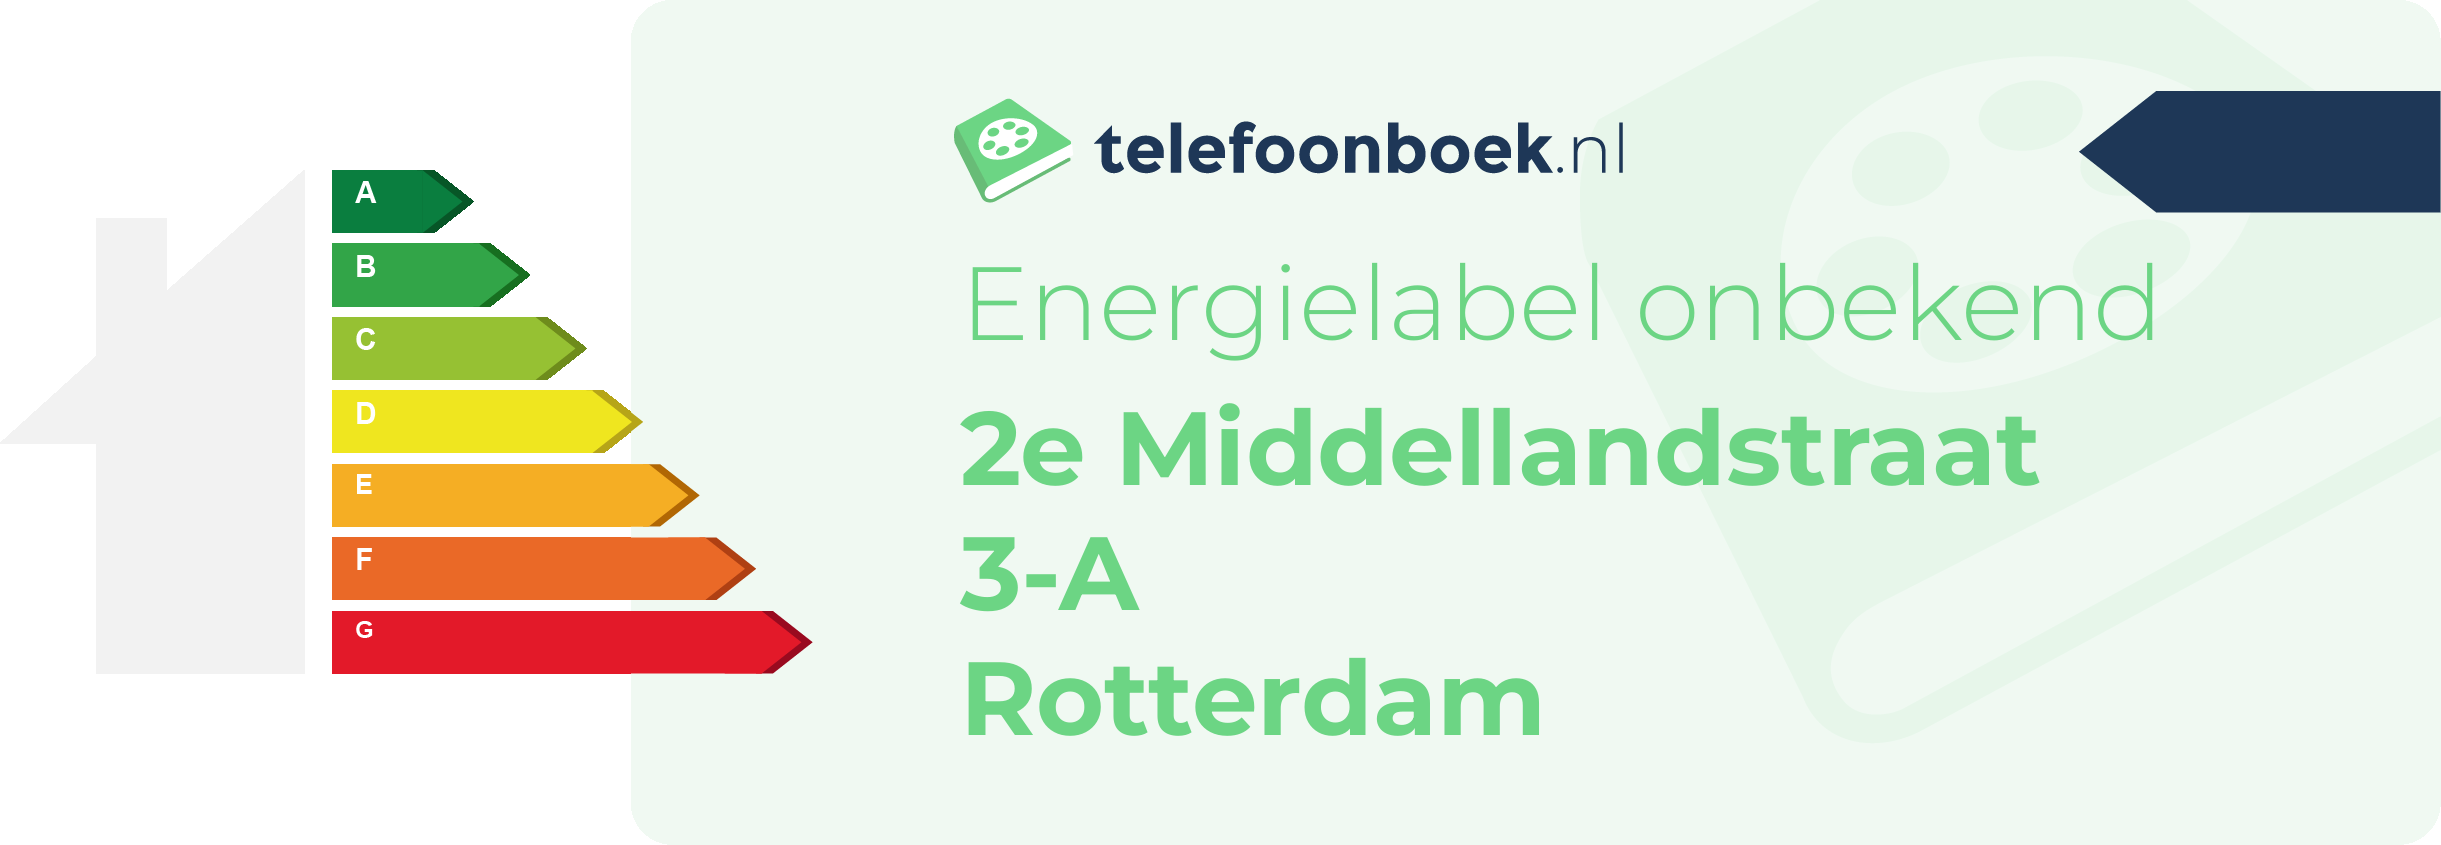 Energielabel 2e Middellandstraat 3-A Rotterdam